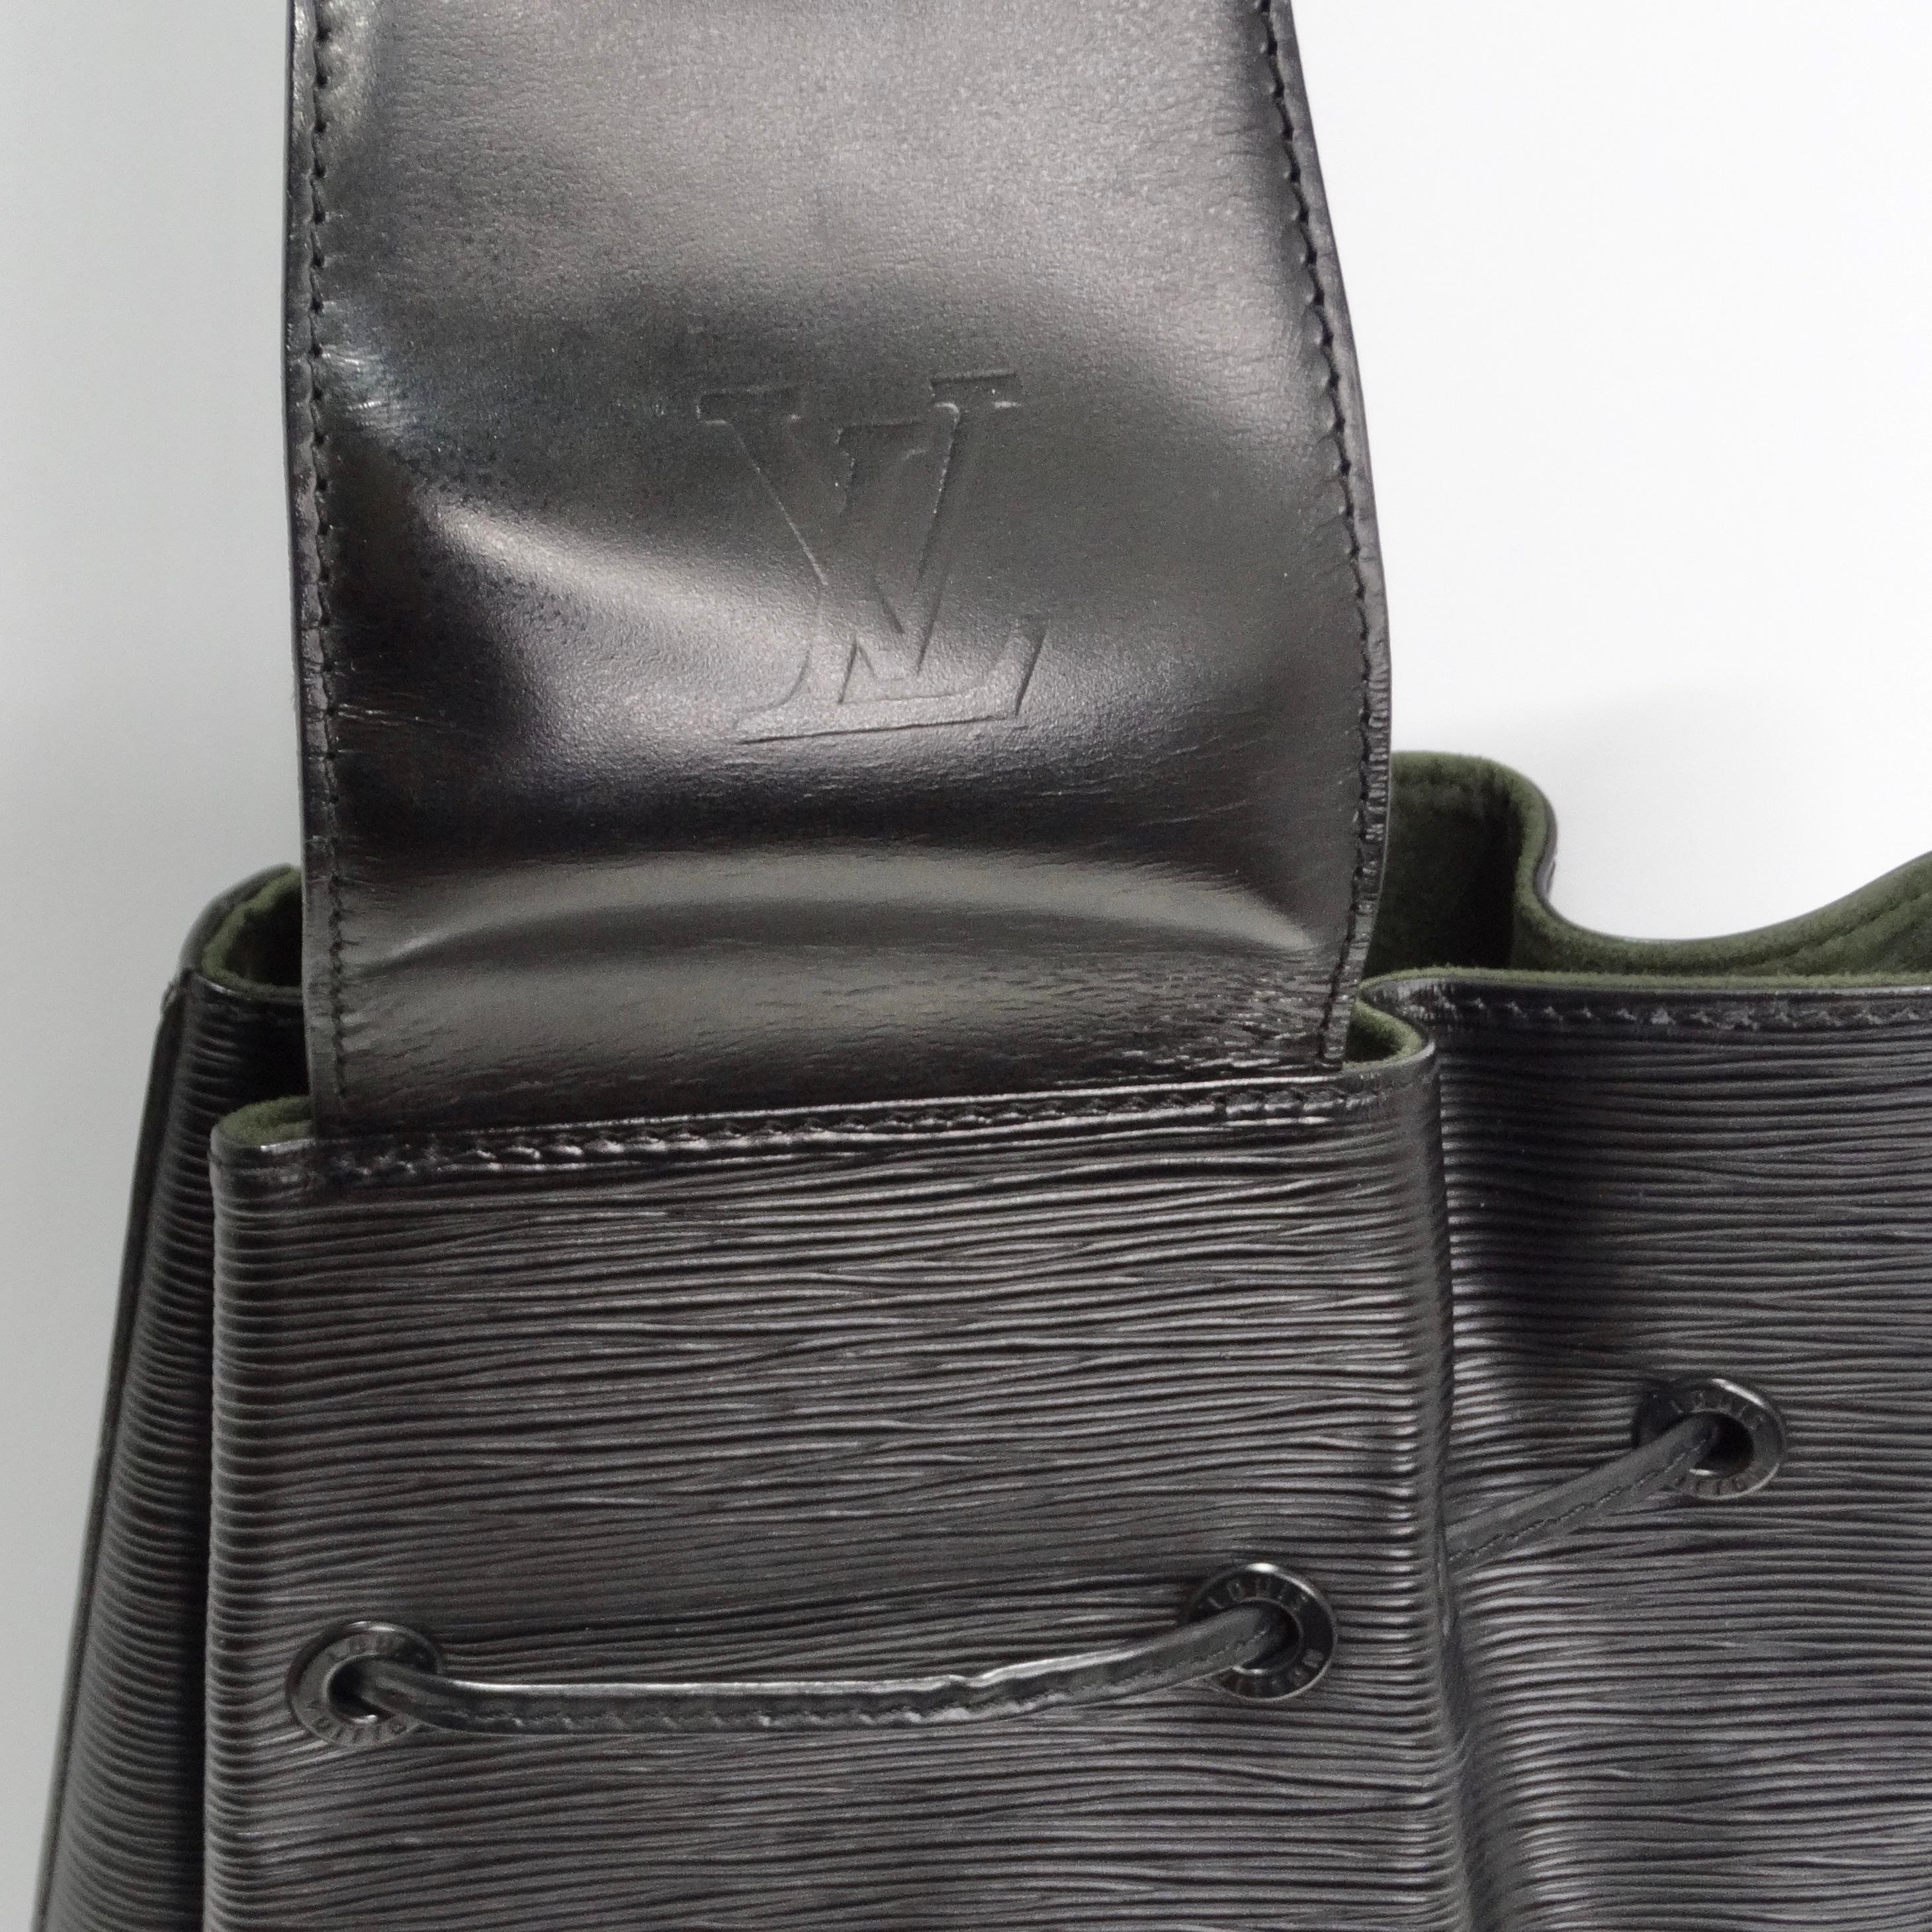 Voici le sac à cordon en cuir épi Louis Vuitton en noir, un sac à bandoulière vintage élégant et polyvalent fabriqué à partir du cuir épi texturé signature de Louis Vuitton. Ce sac emblématique est doté d'une longue bandoulière en cuir lisse qui